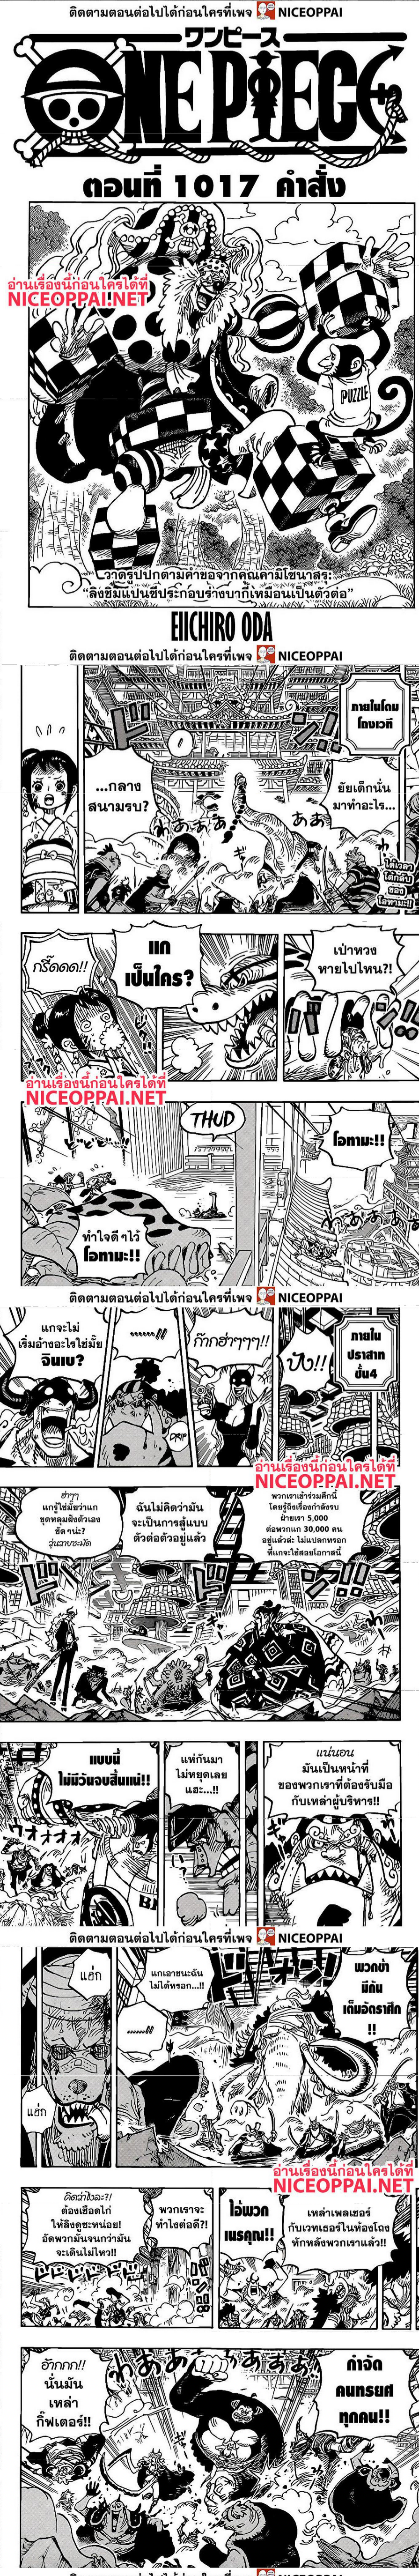 One Piece1017 (1)